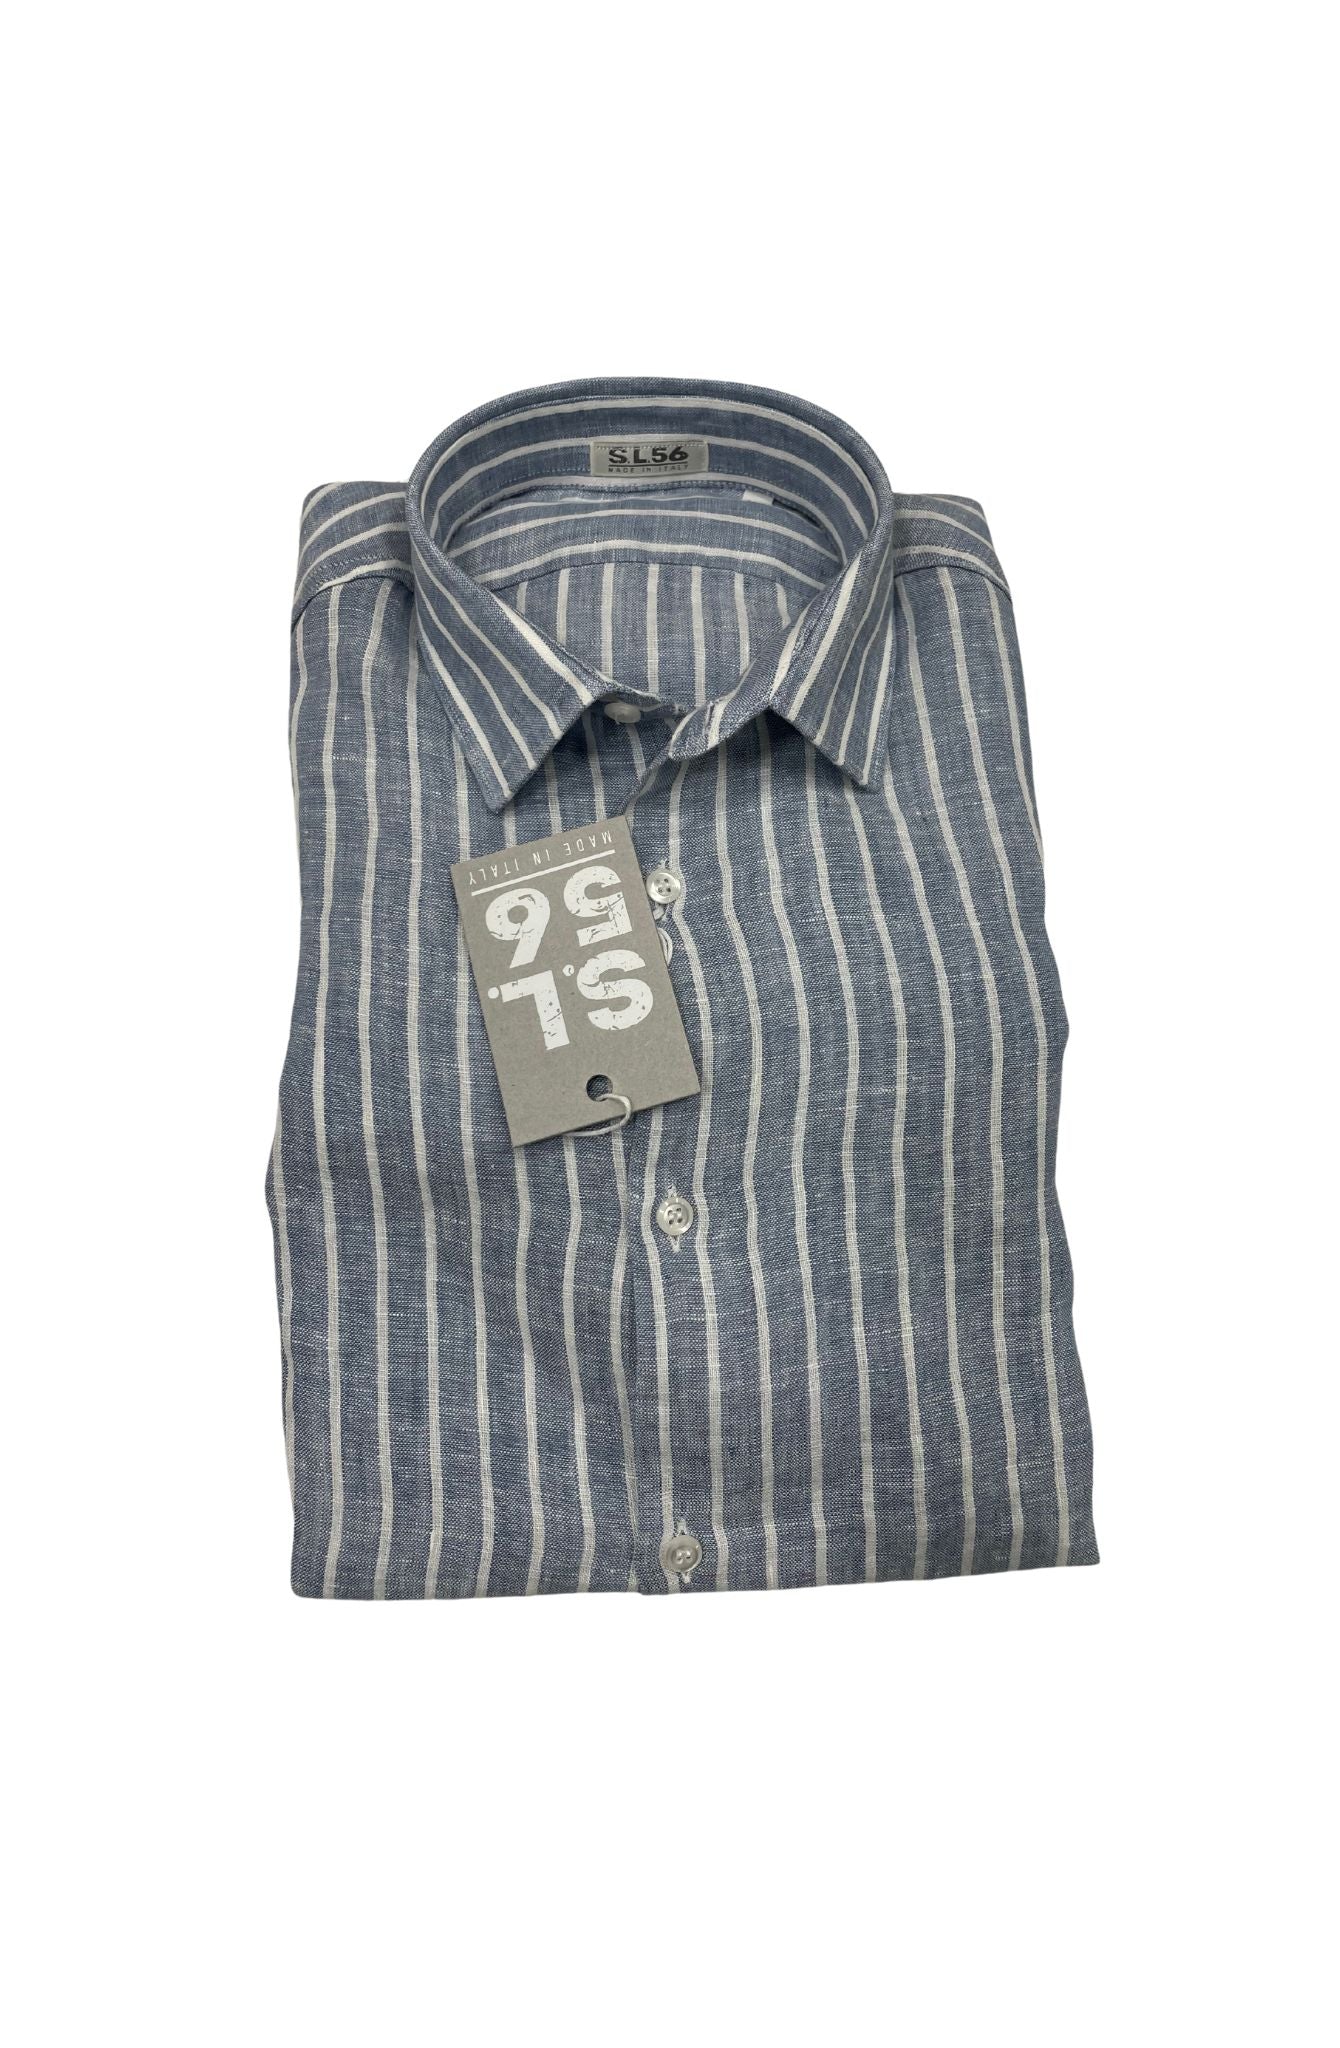 Camicie puro lino righe S.L. 56 made in italy